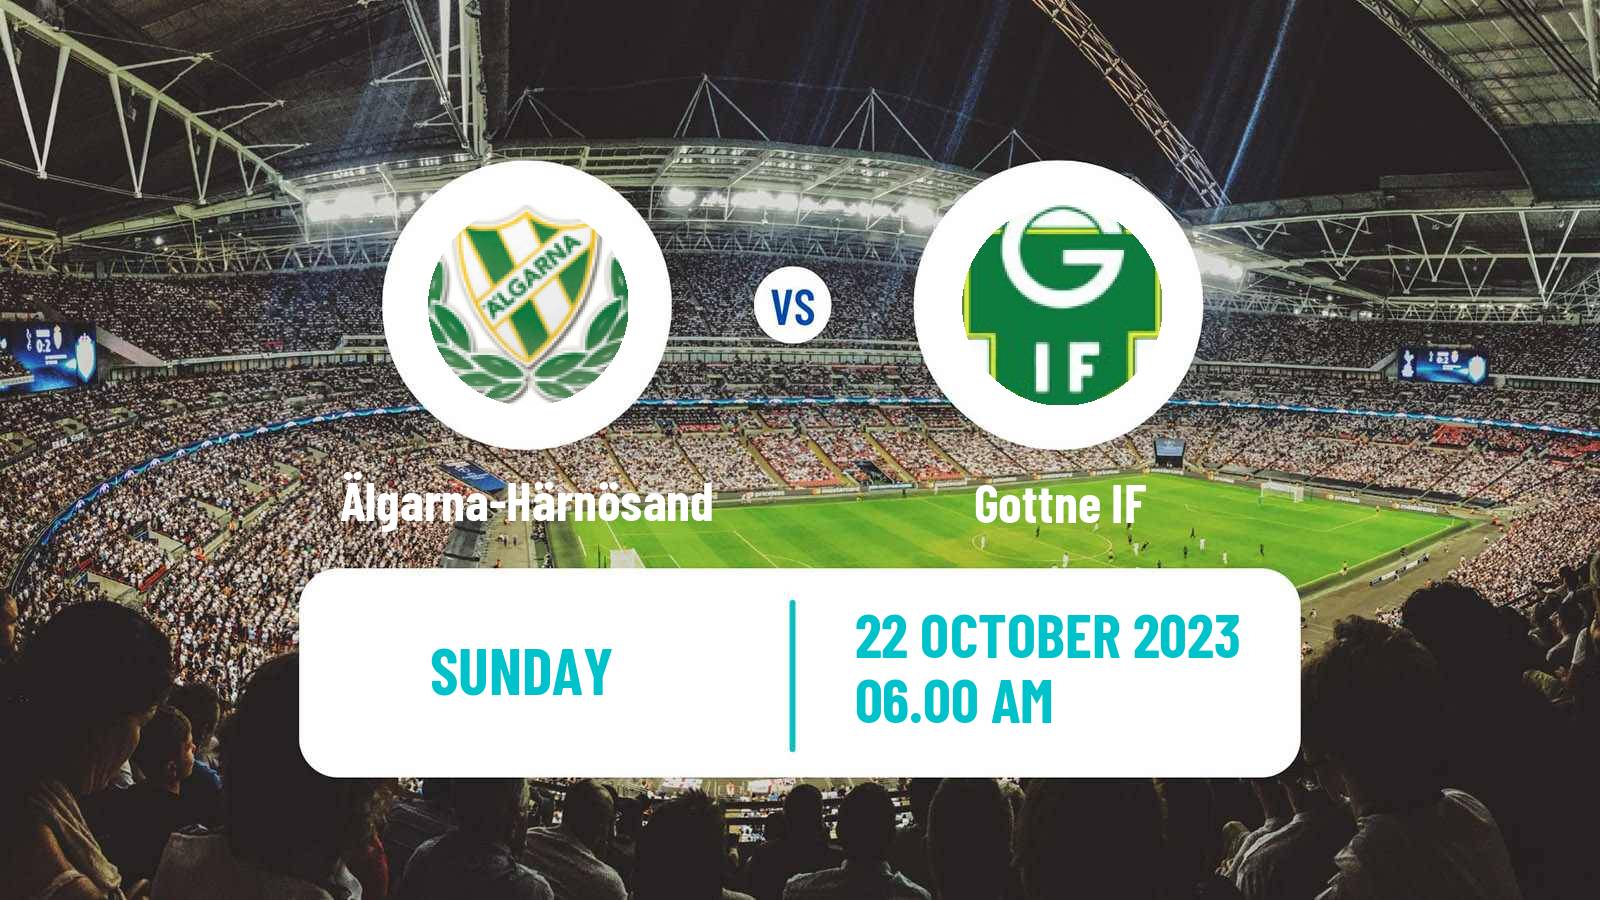 Soccer Swedish Division 2 - Norrland Älgarna-Härnösand - Gottne